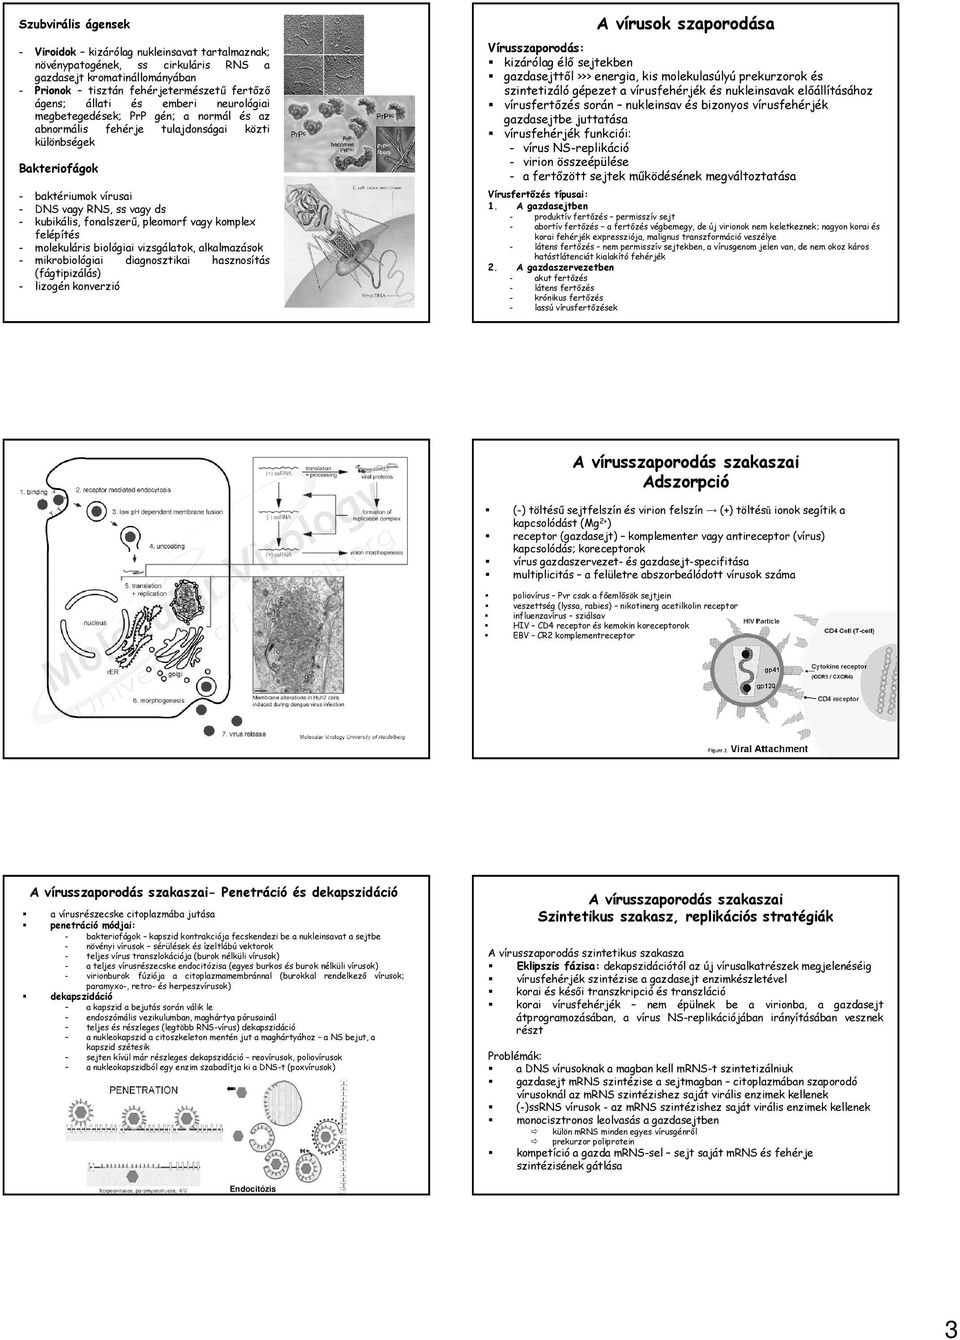 pleomorf vagy komplex felépítés - molekuláris biológiai vizsgálatok, alkalmazások - mikrobiológiai diagnosztikai hasznosítás (fágtipizálás) - lizogén konverzió A vírusok szaporodása Vírusszaporodás: